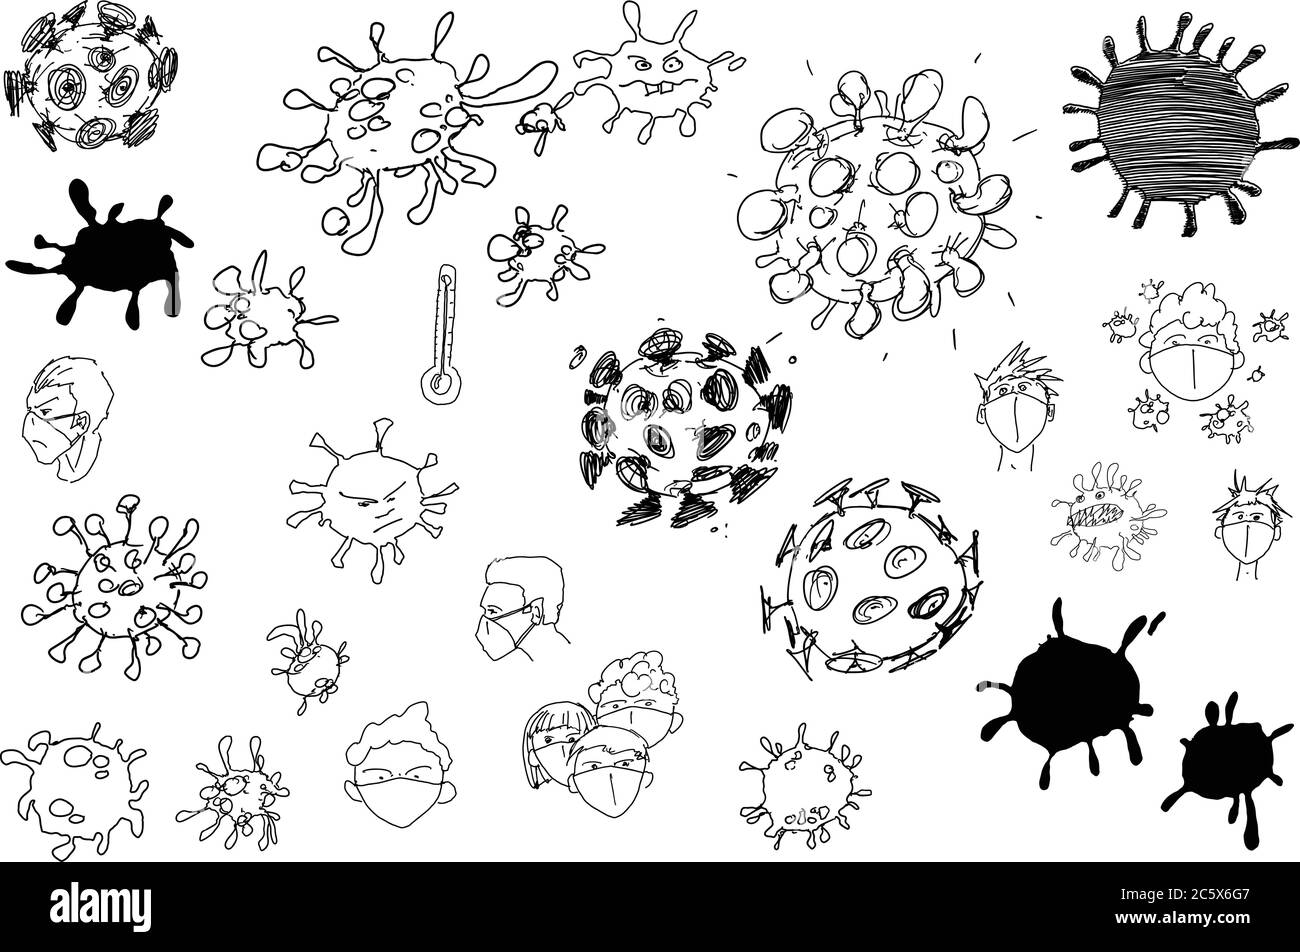 Viele handgezeichnete Skizzen Coronavirus und Menschen in Gesichtsmasken Stock Vektor